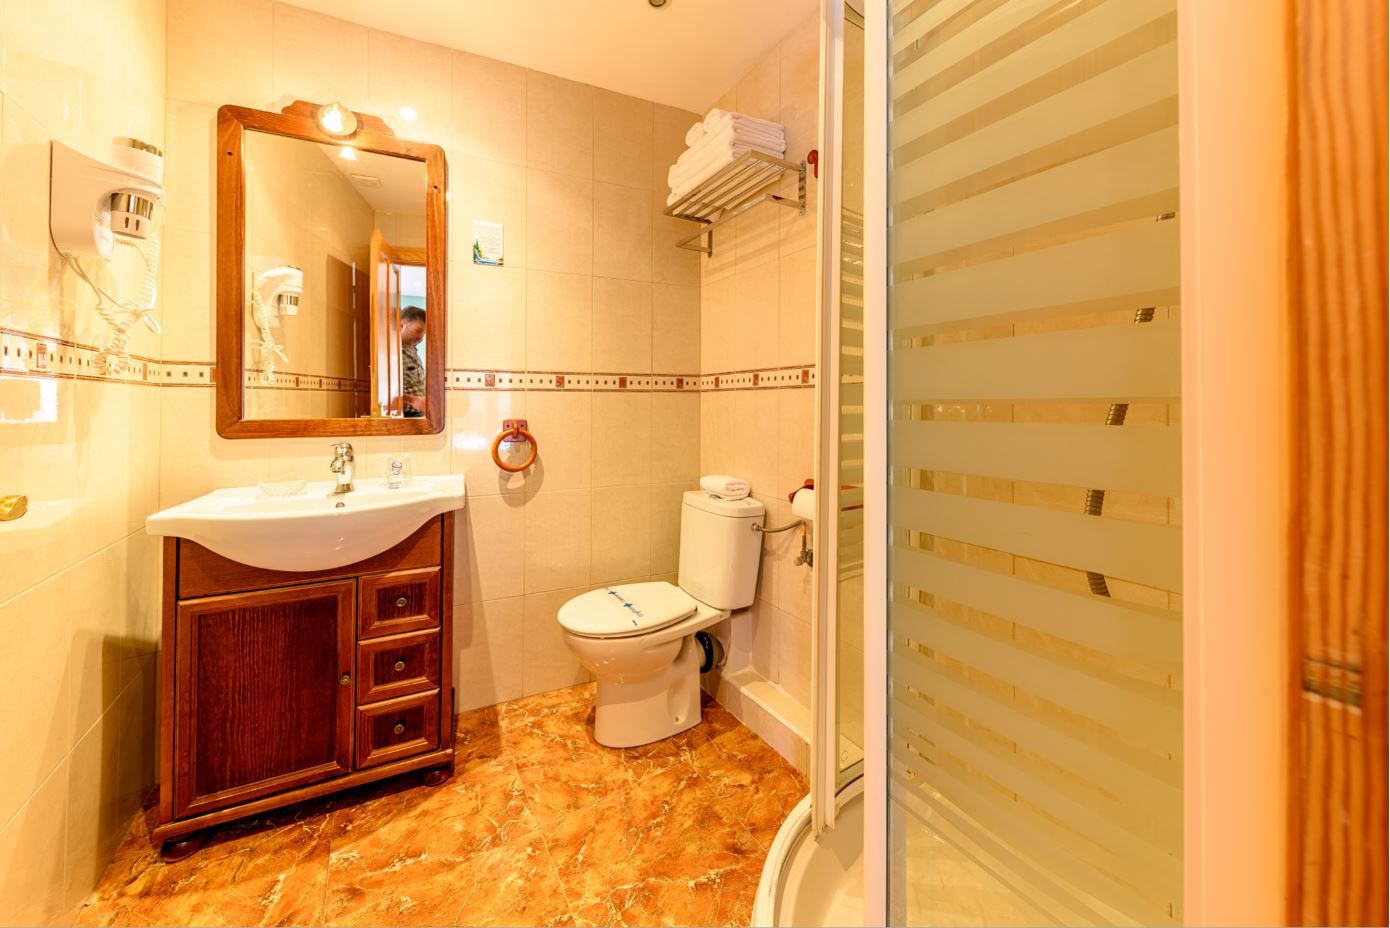 Baño Habitación Cuadruple en hotel Castro Urdiales cocina